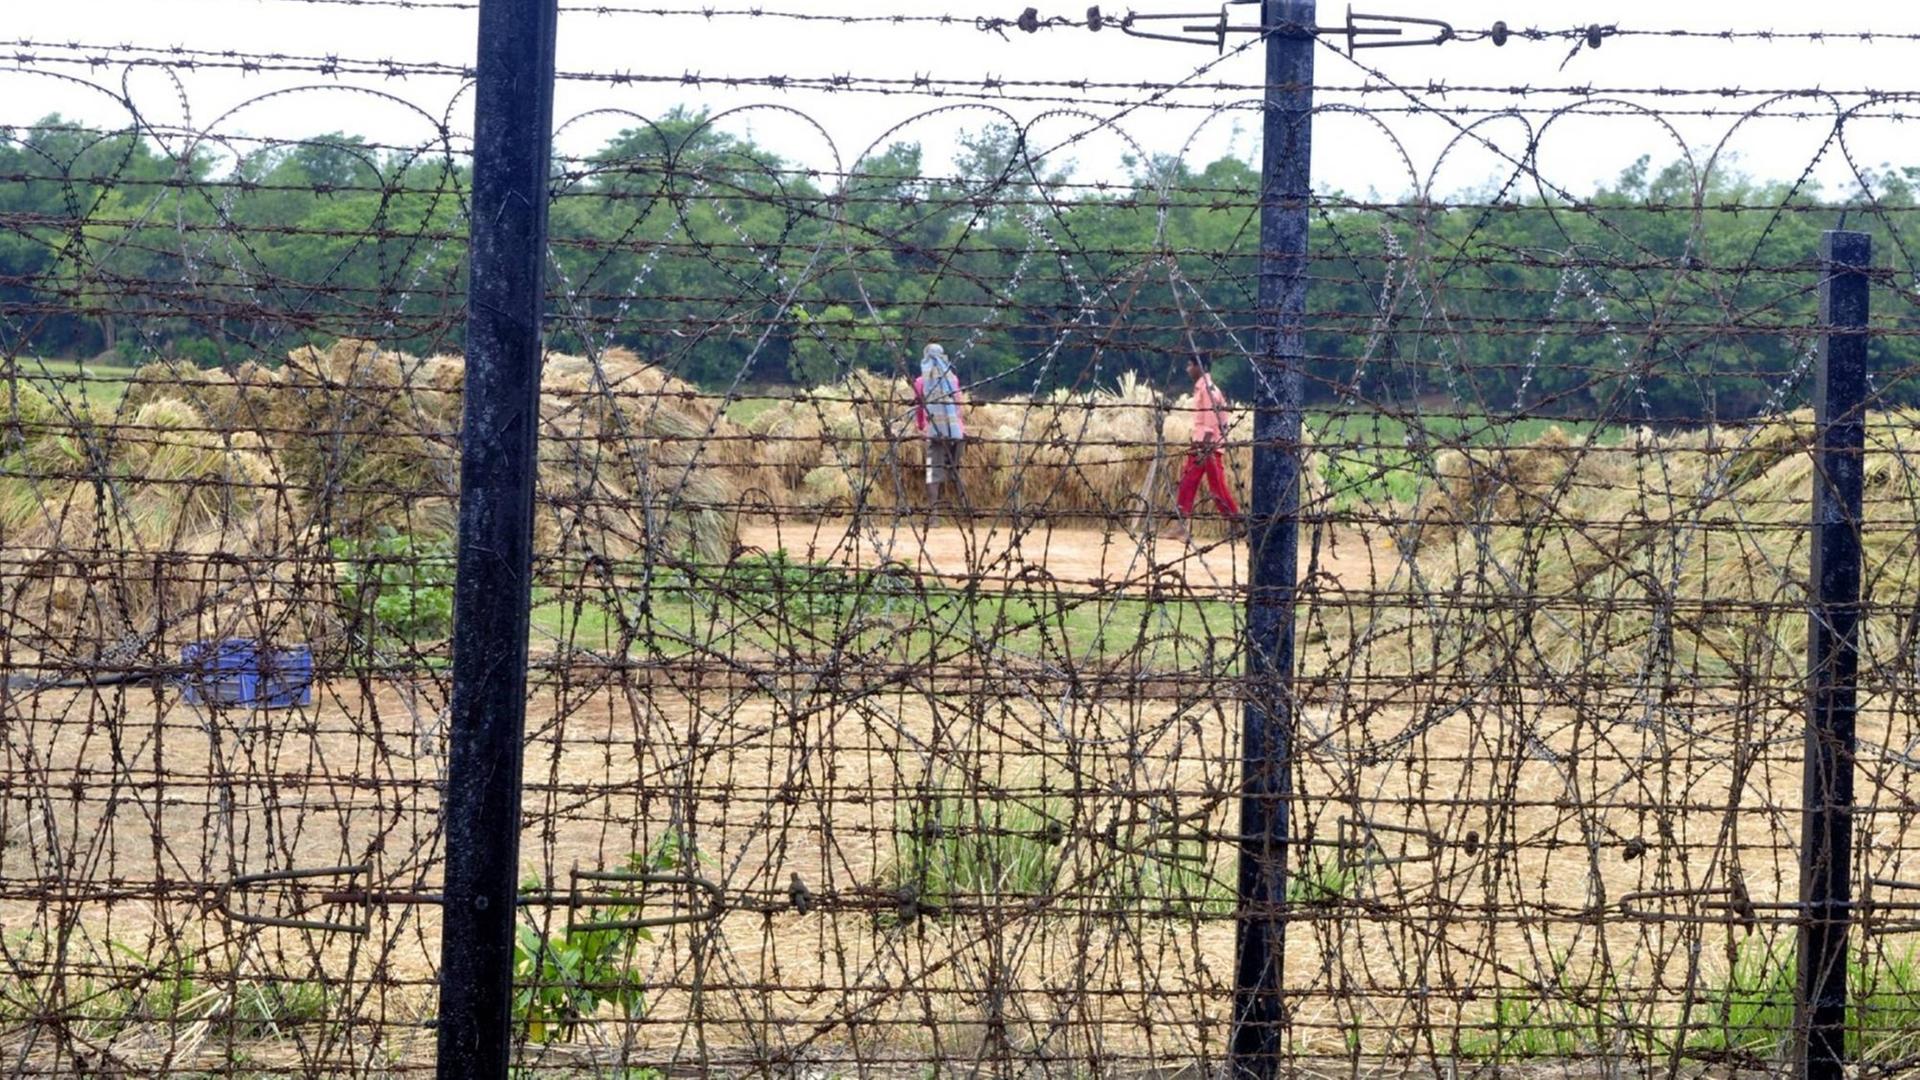 Indische Bauern arbeiten auf einem Feld direkt an der durch einen Zaun gesicherten Grenze.